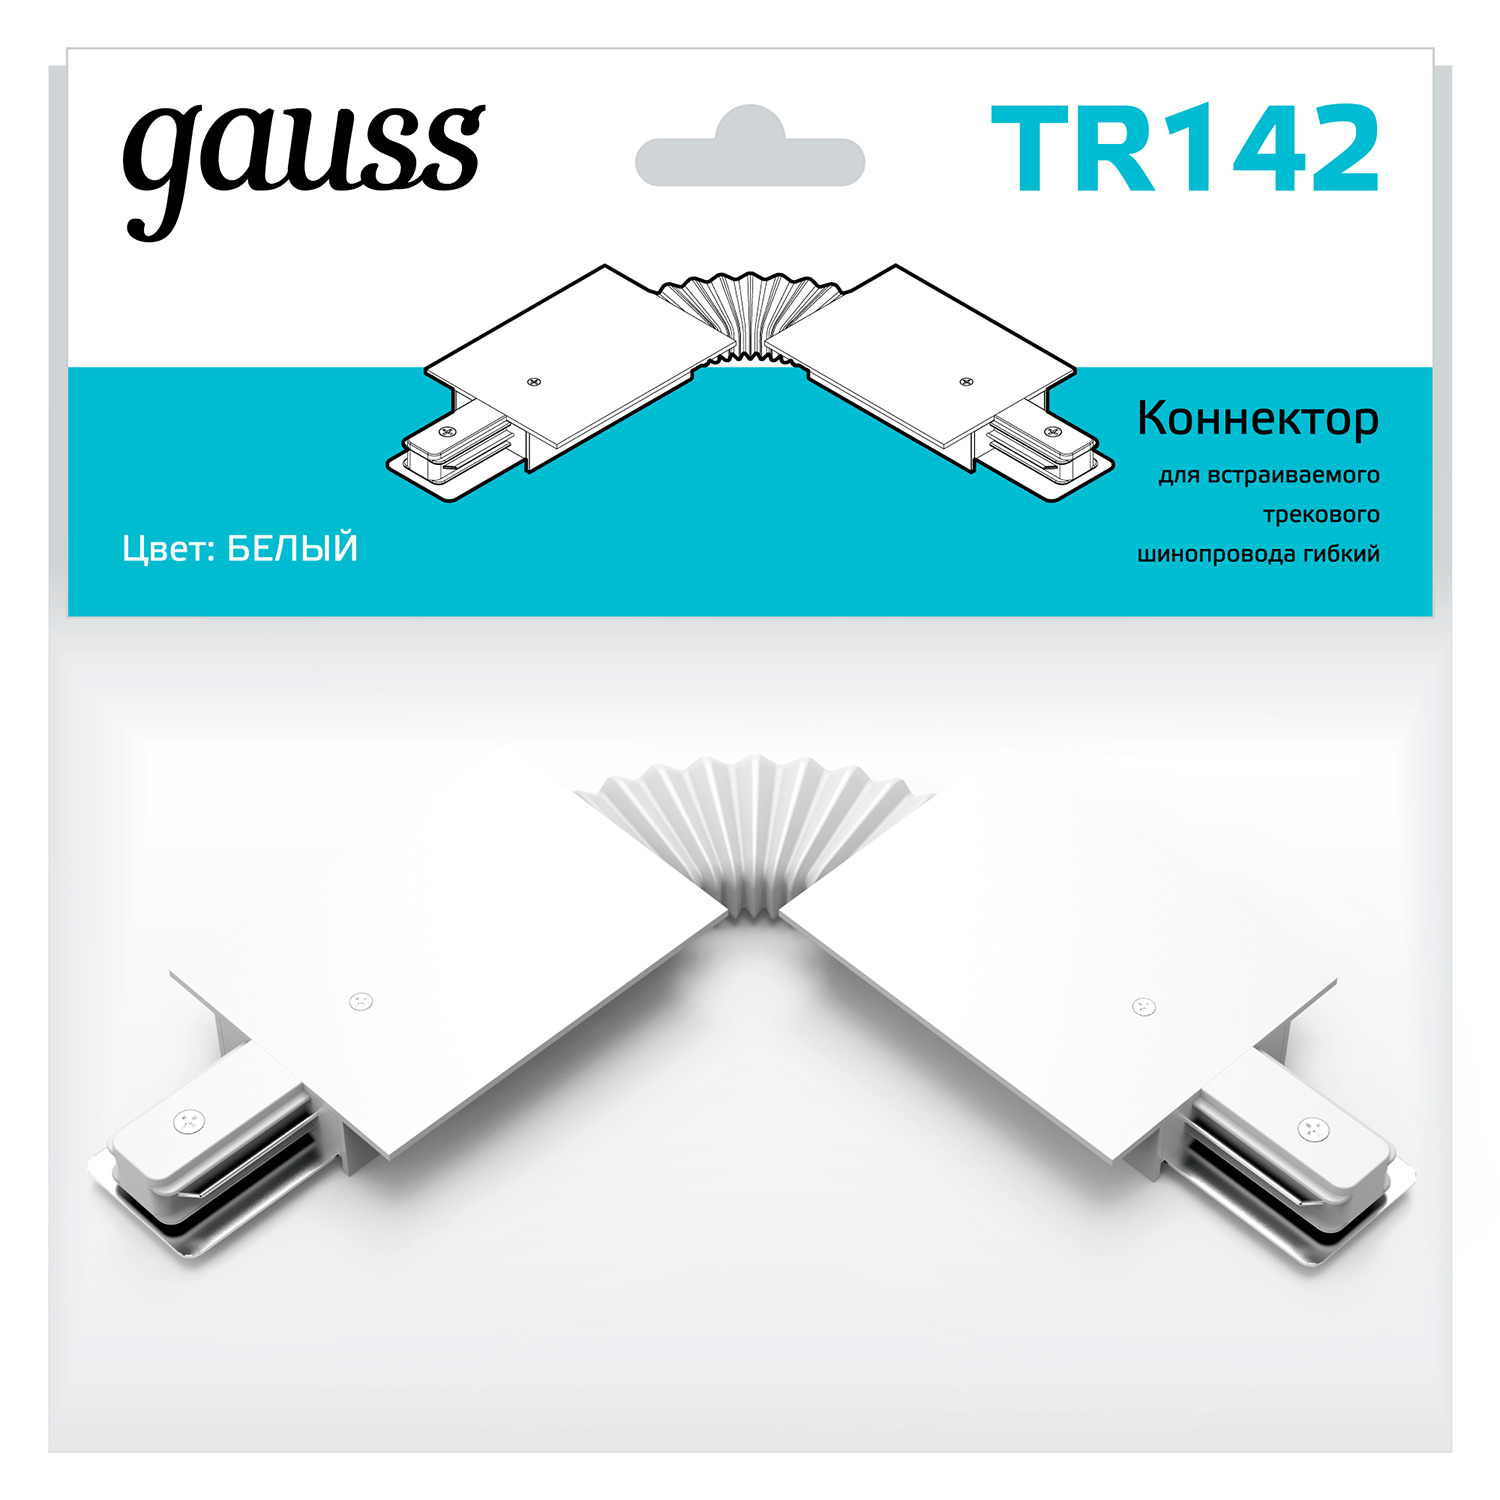 Коннектор Gauss для встраиваемых трековых шинопроводов гибкий (I) белый